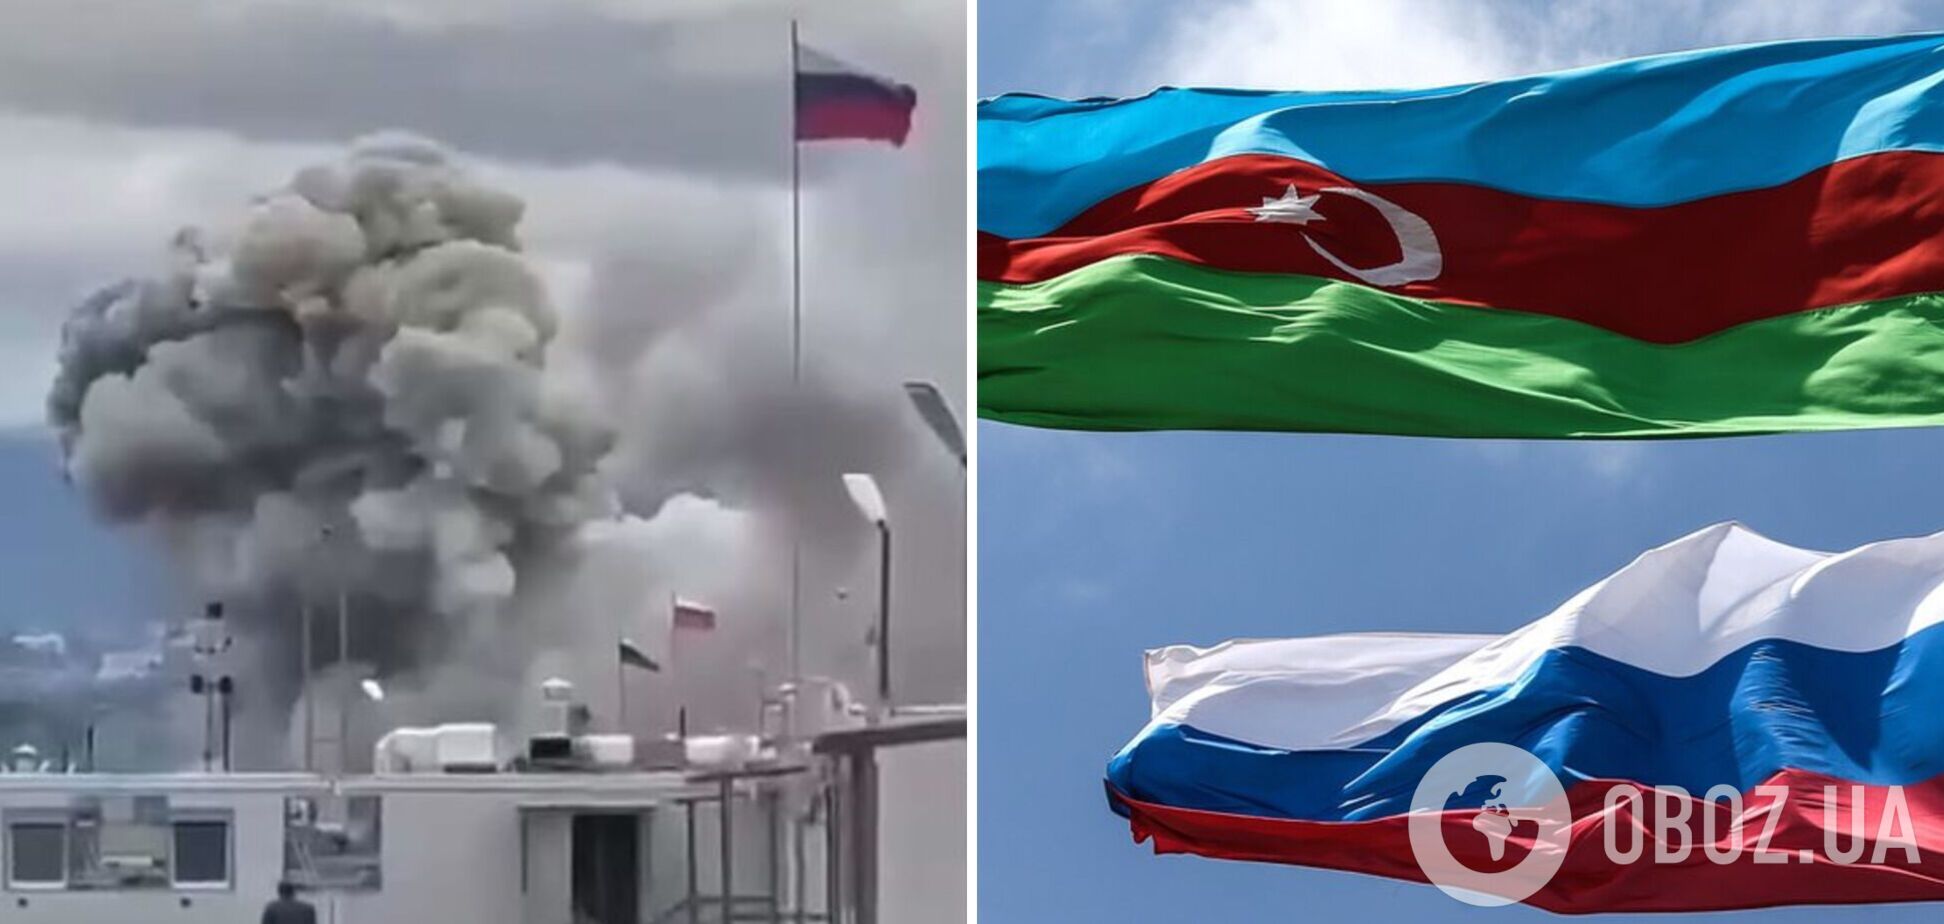 Поднялся 'гриб' дыма: в сети показали удар Азербайджана по базе российских 'миротворцев' в Нагорном Карабахе